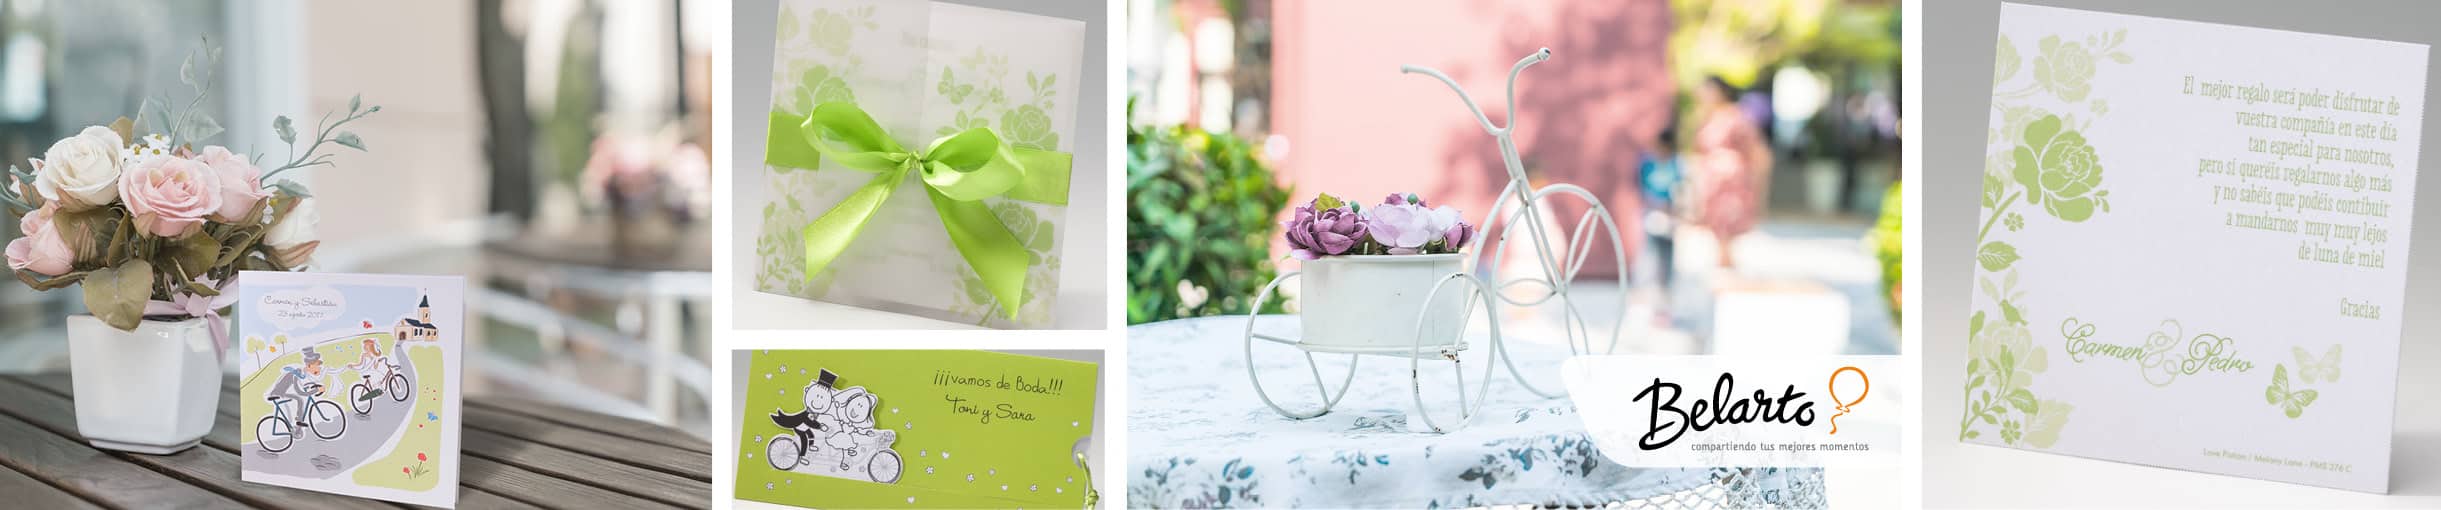 Diseño e impresión de invitaciones y detalles para bodas